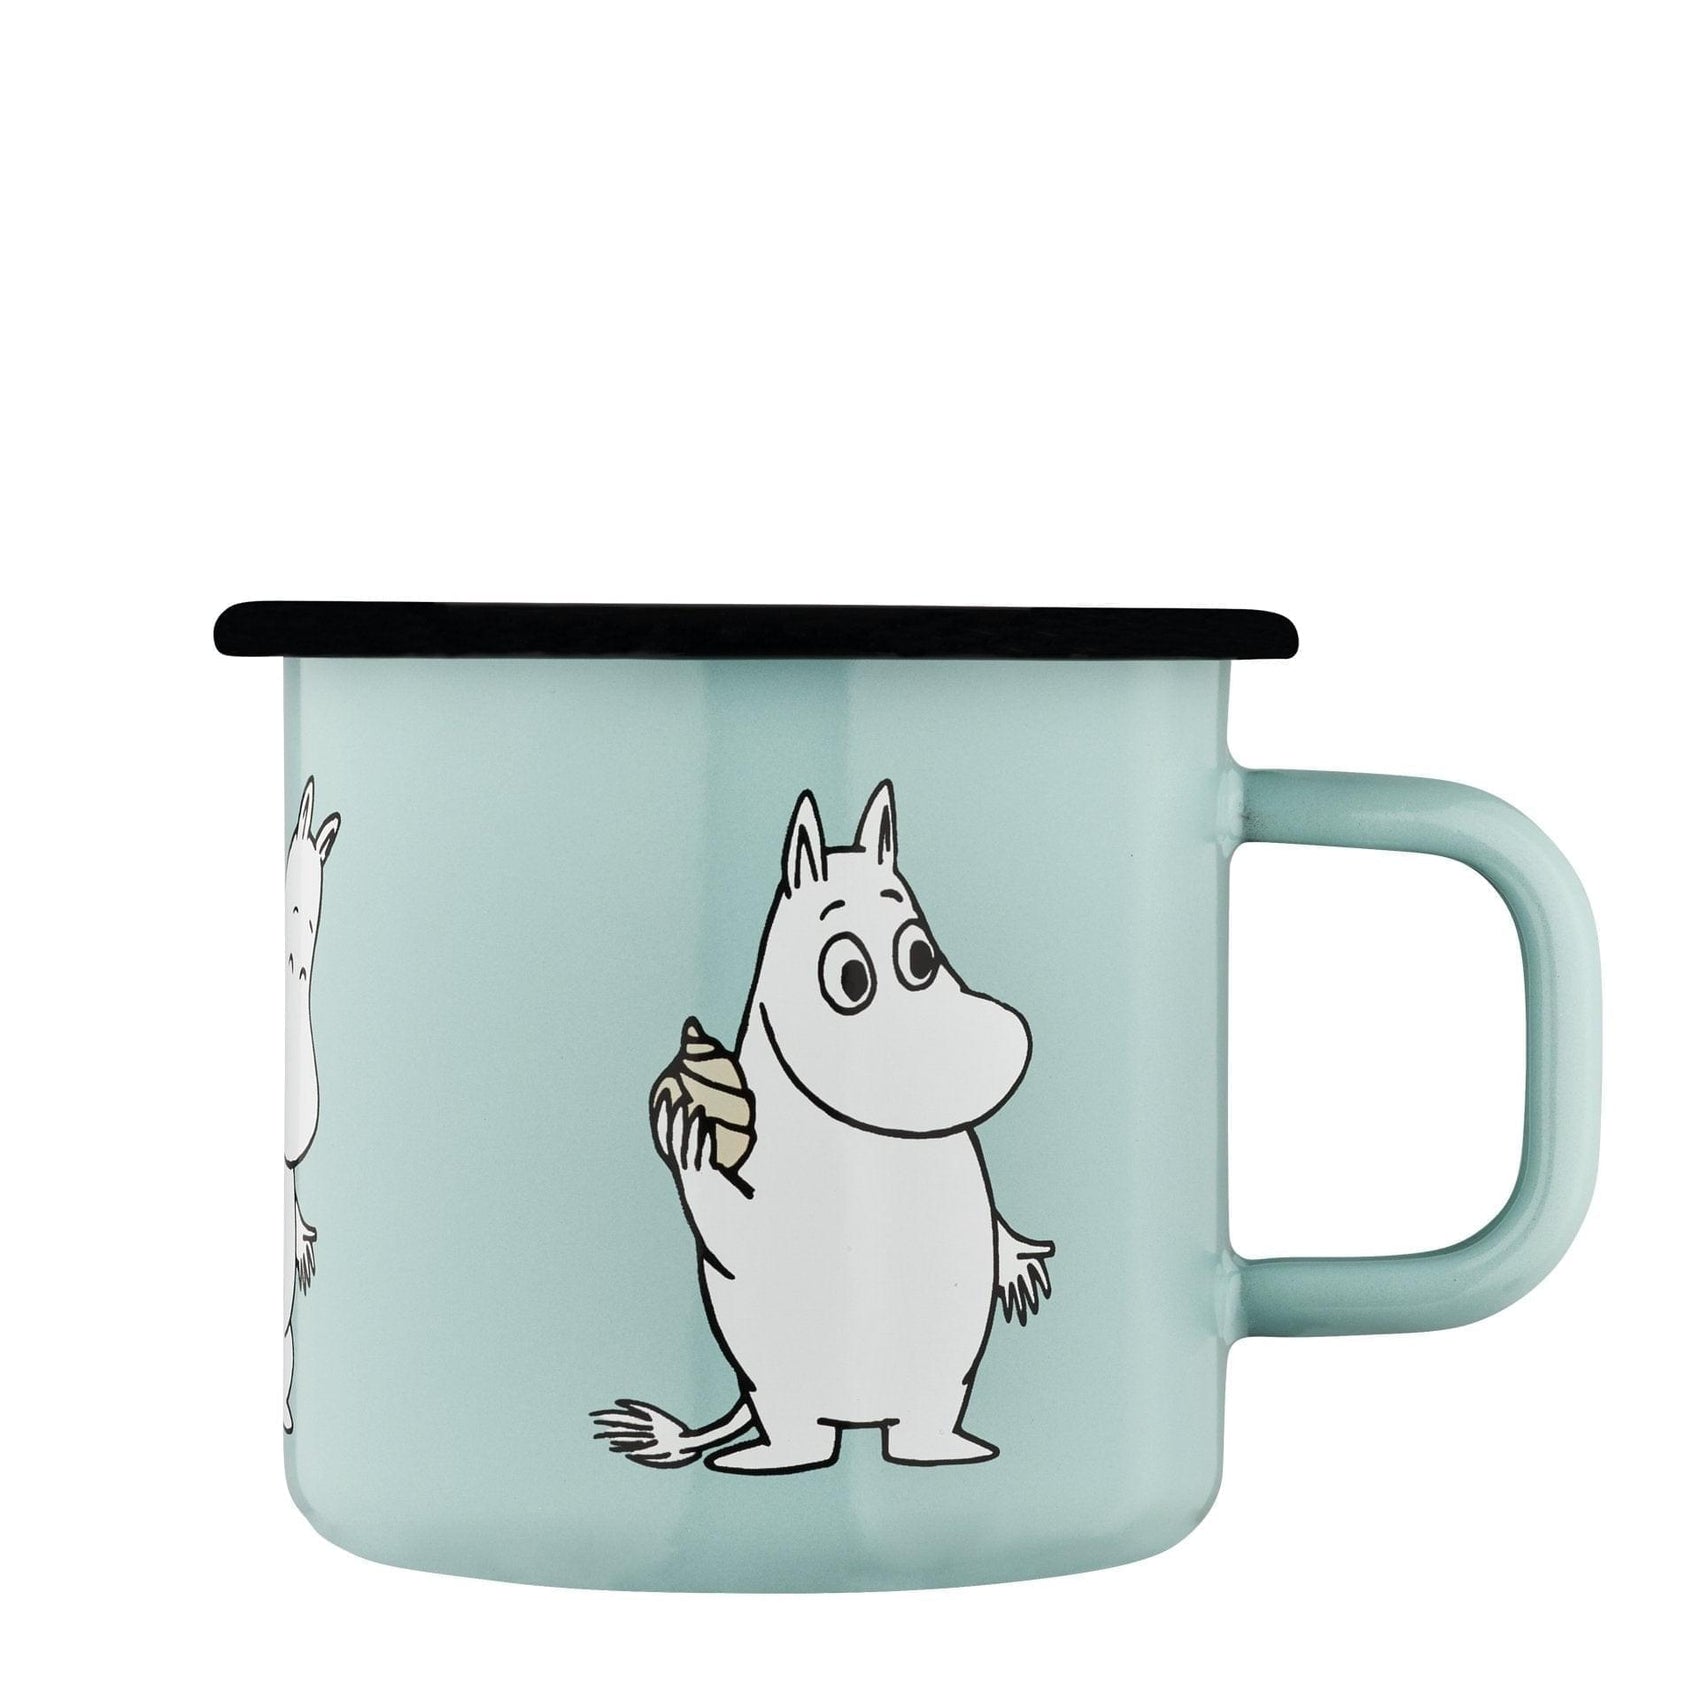 The Moomins enamel mug 3.7dl Retro, mint